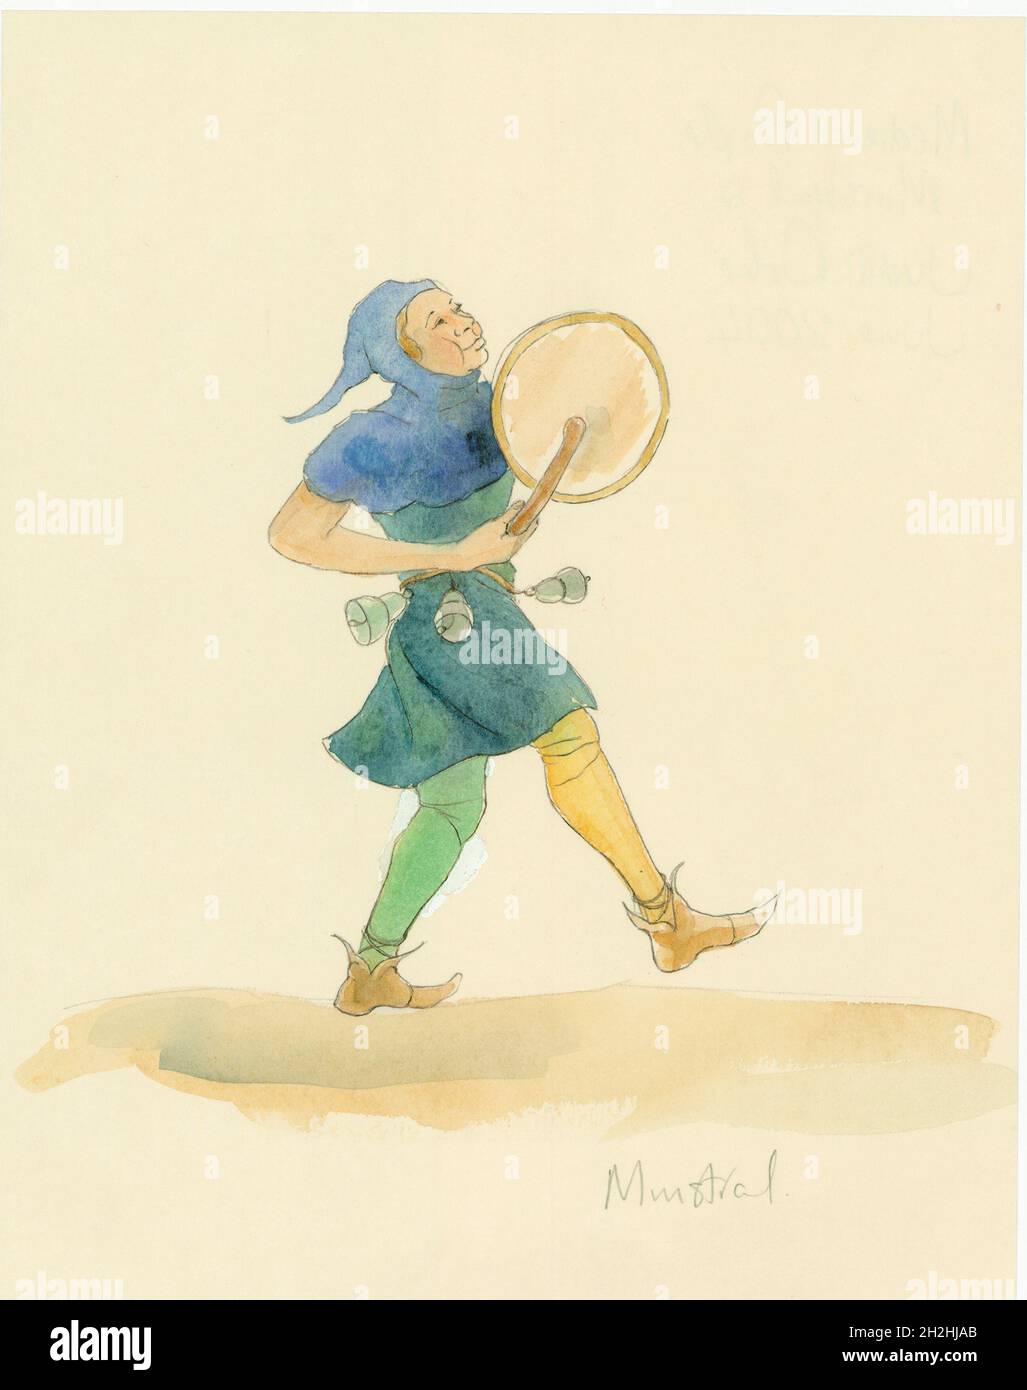 Un minstrel médiéval jouant un instrument de percussion, peut-être un tabor, 2004.Un dessin de reconstruction d'un minstrel médiéval jouant un instrument de percussion, peut-être un tabor. Banque D'Images